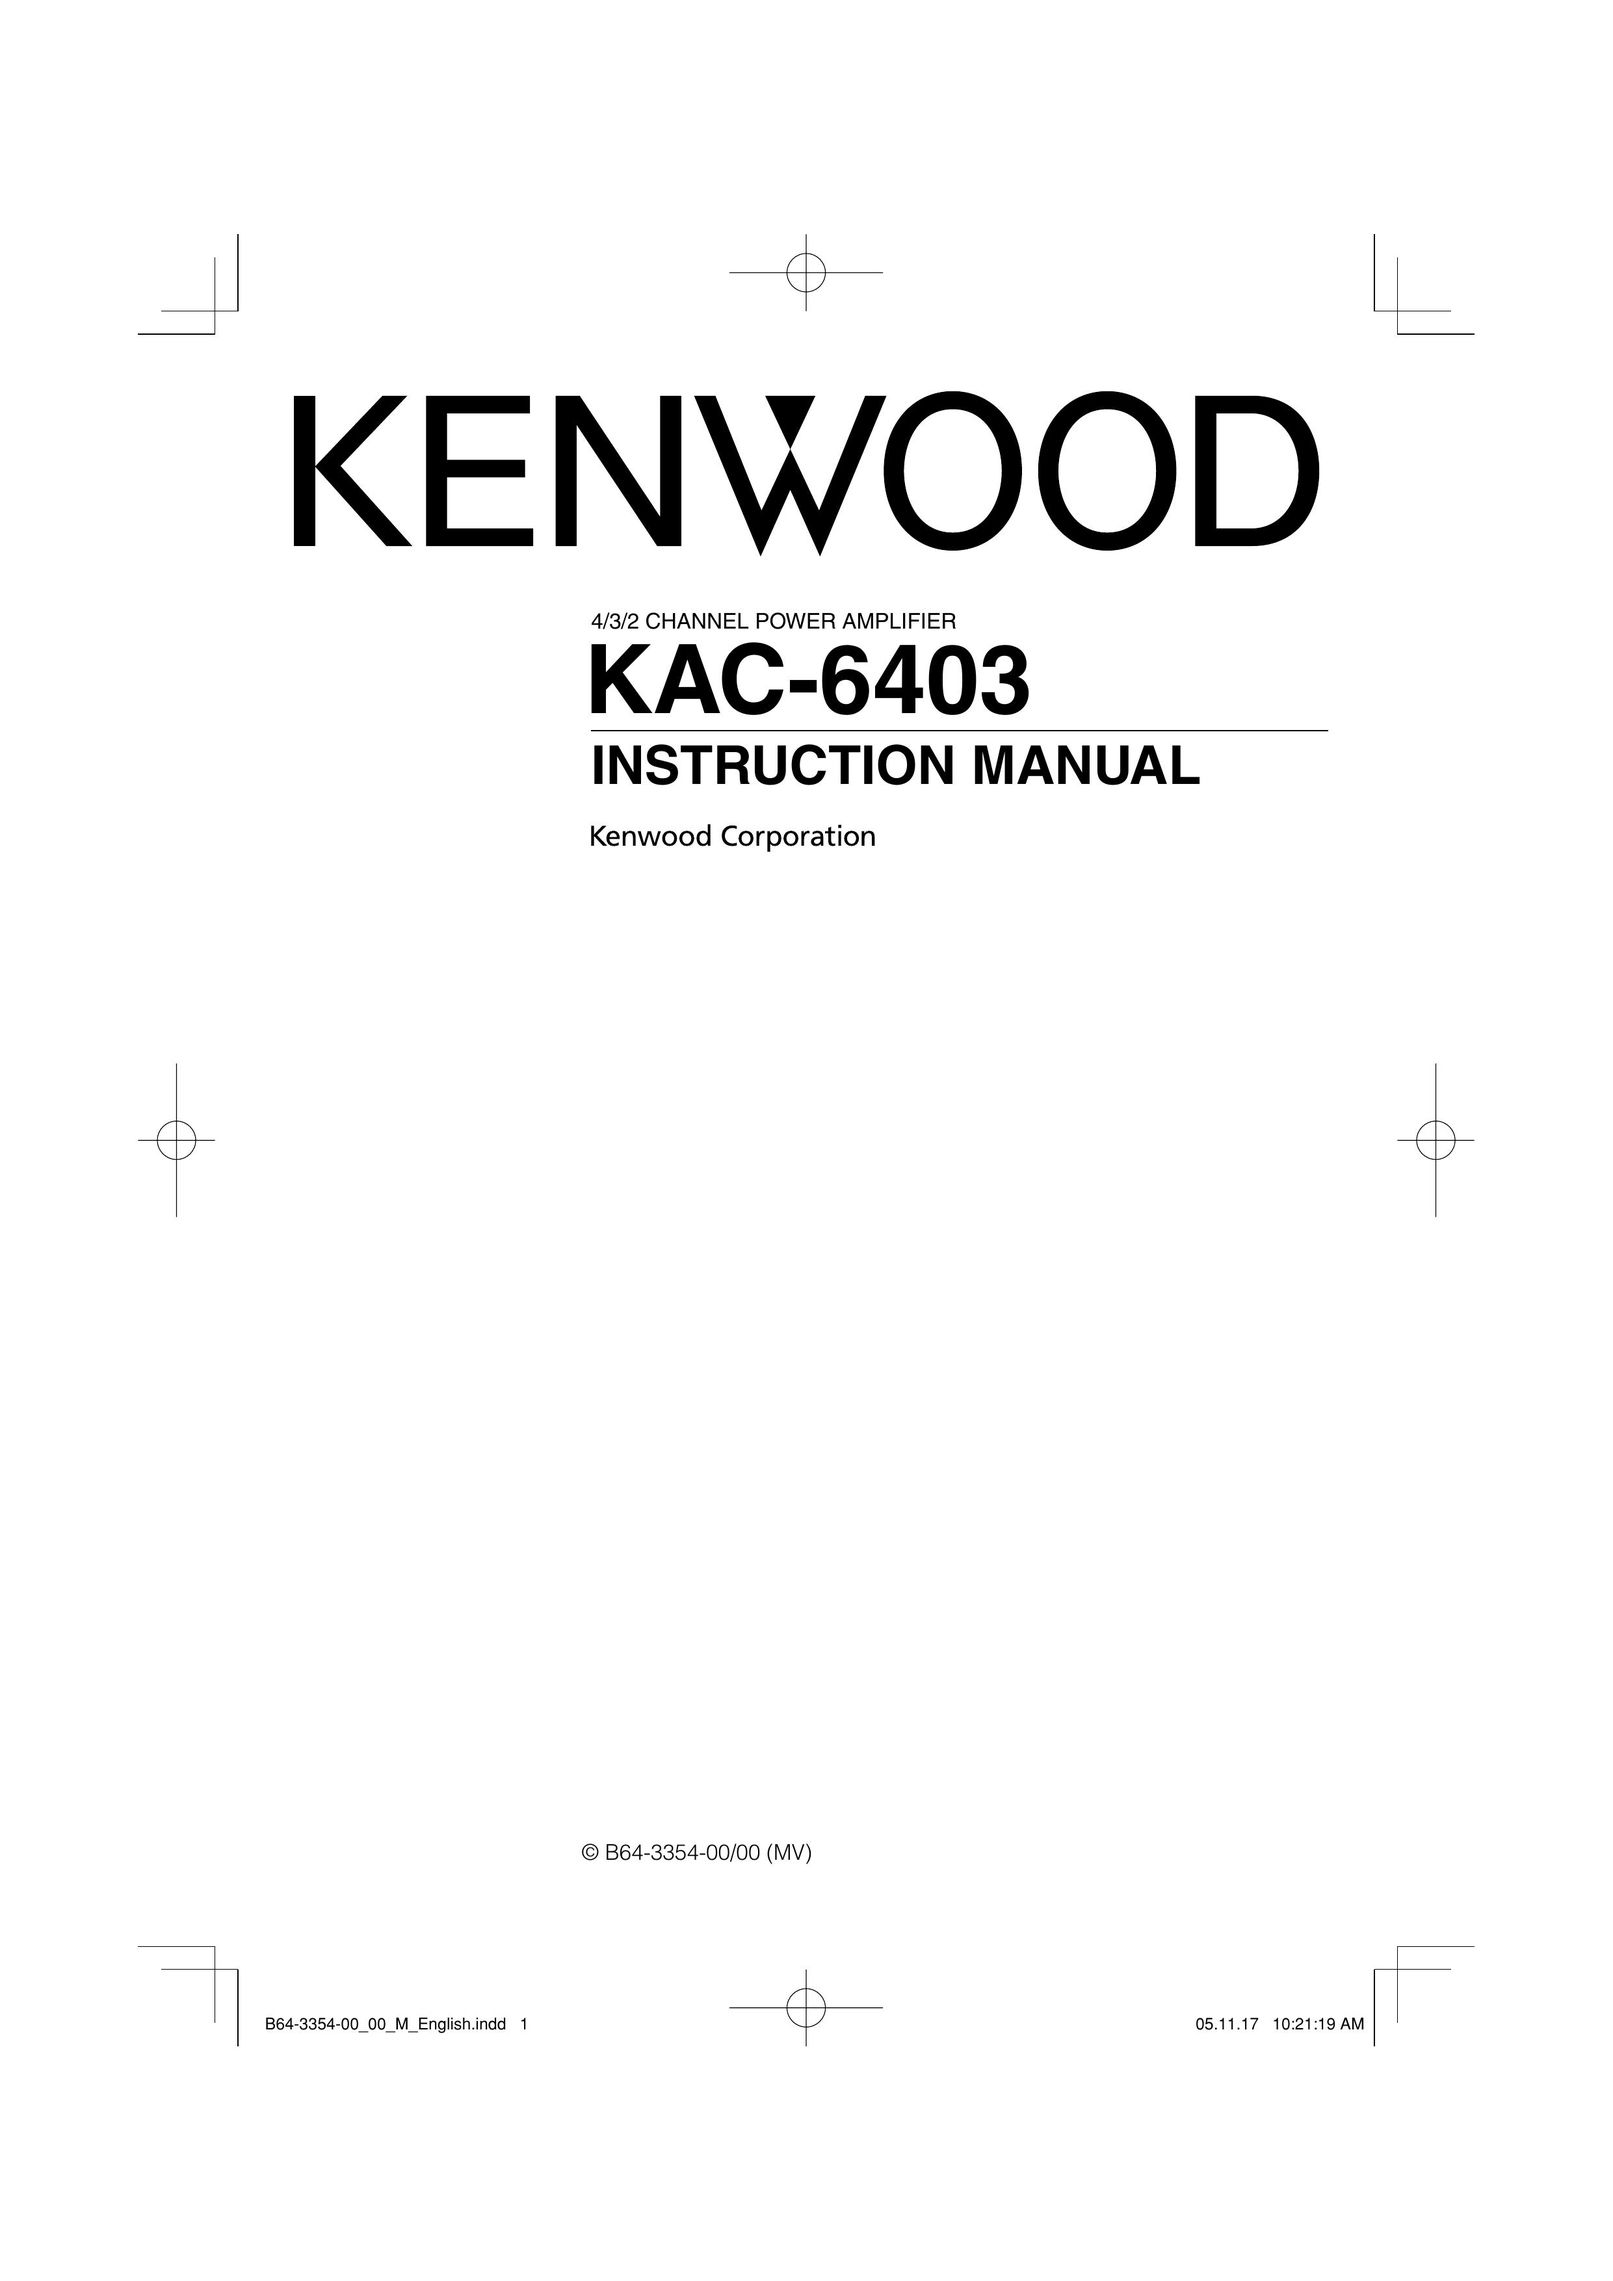 Kenwood KAC-6403 Car Amplifier User Manual